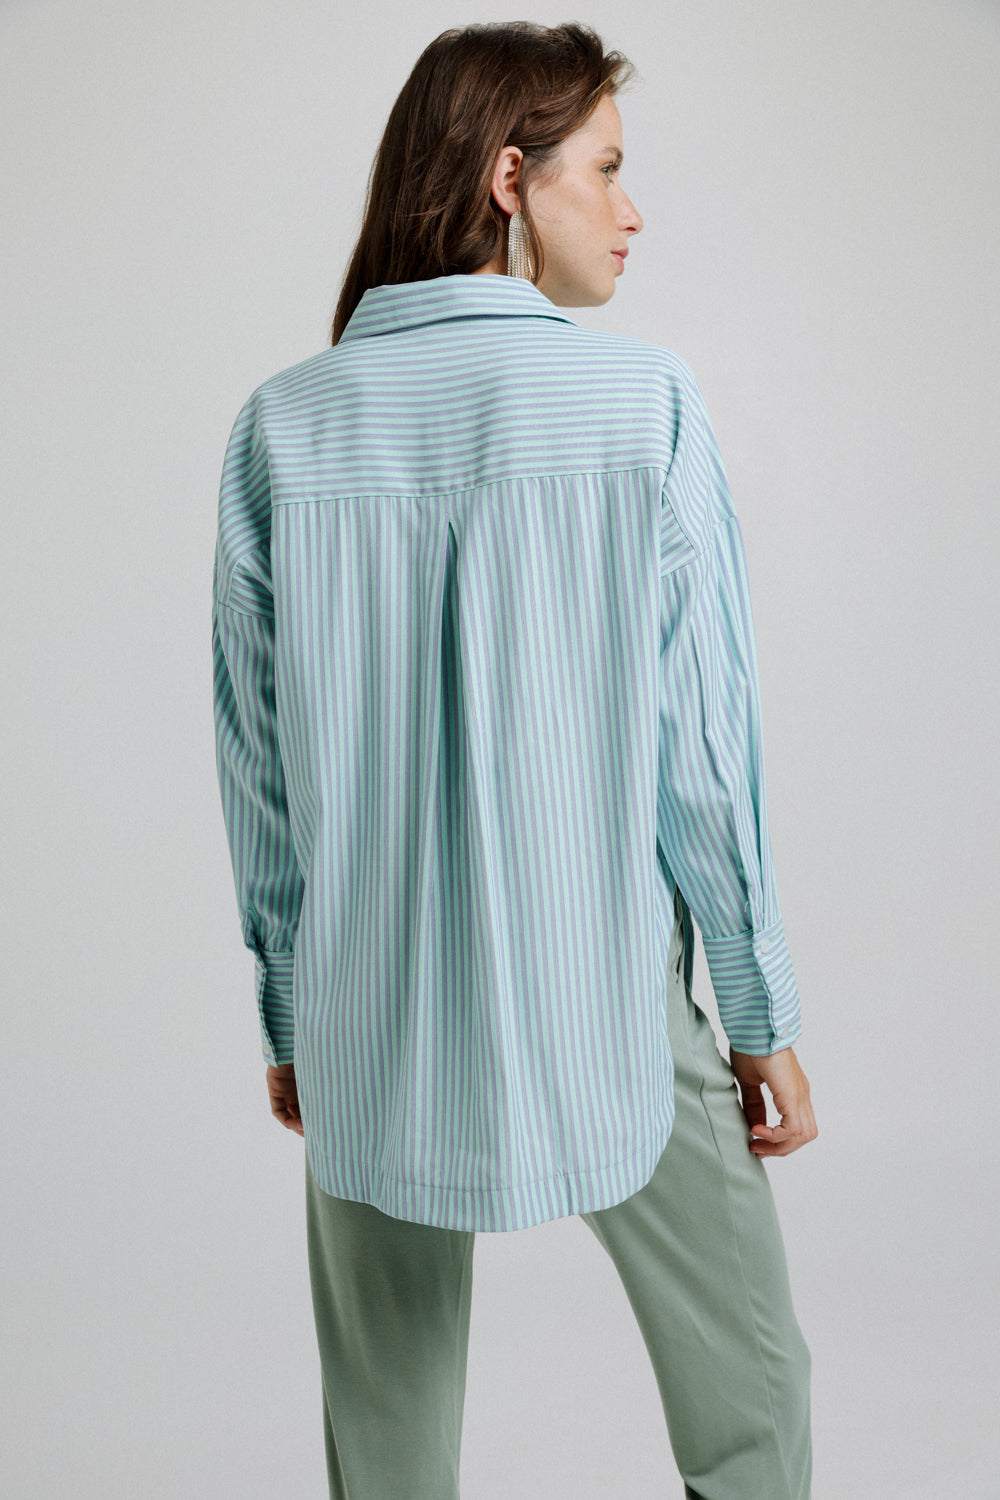 Stripes Aqua Buttoned Shirt